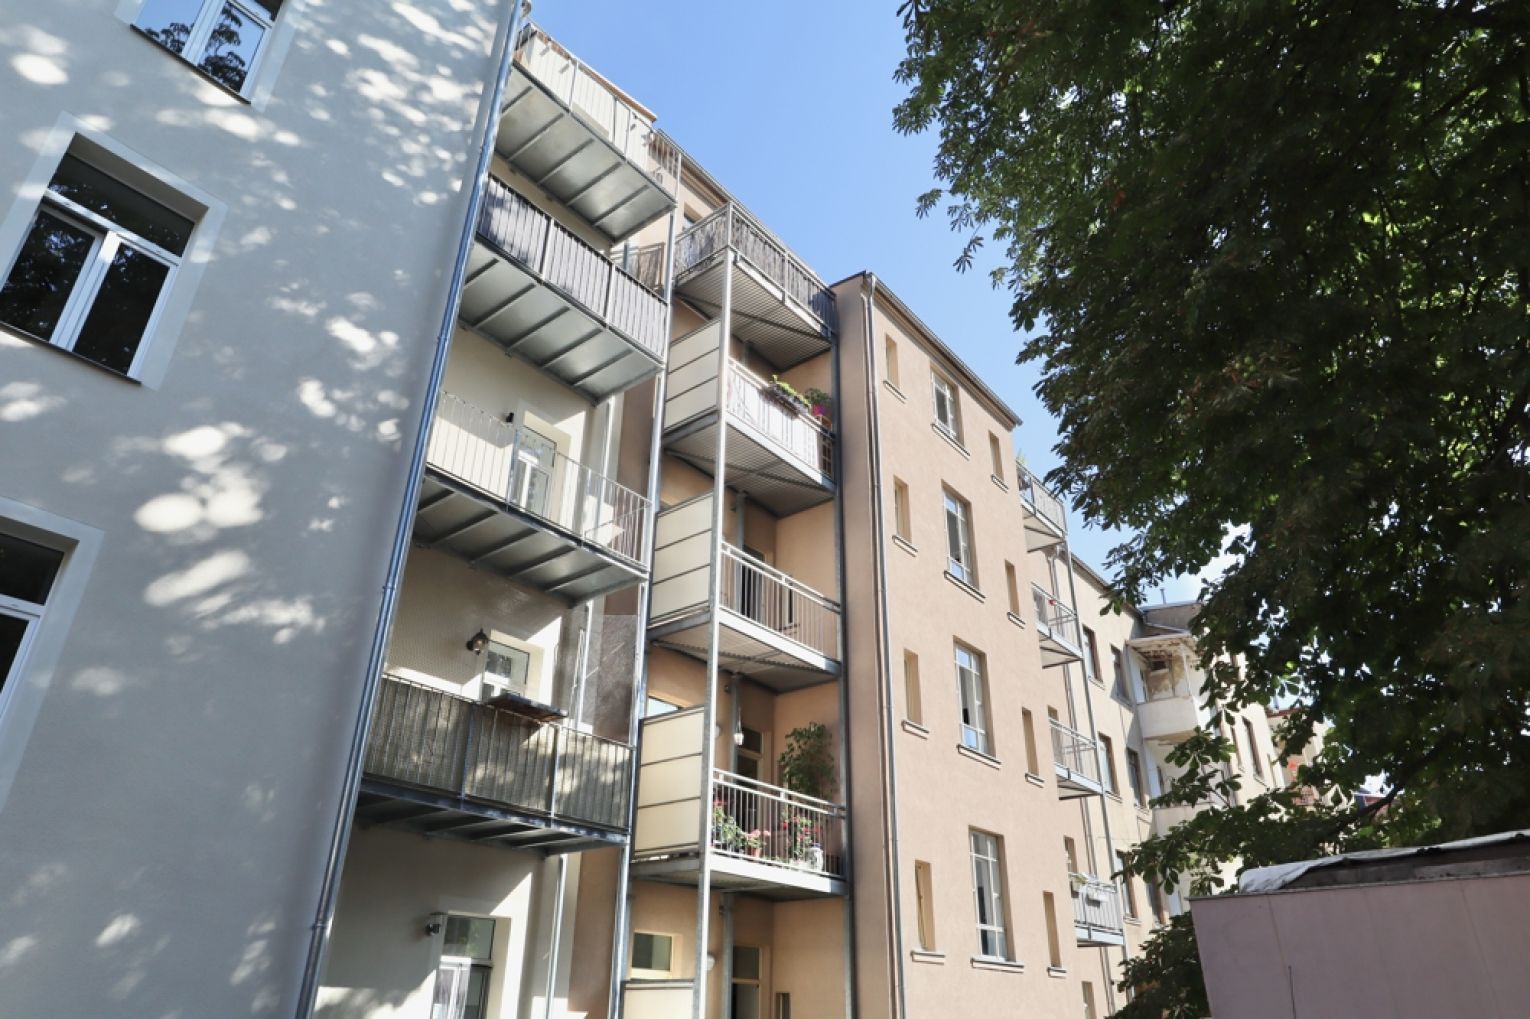 2-Raum Wohnung • Chemnitz • Balkon • Stellplatz • Schloßchemnitz • Fussbodenheizung • jetzt mieten!